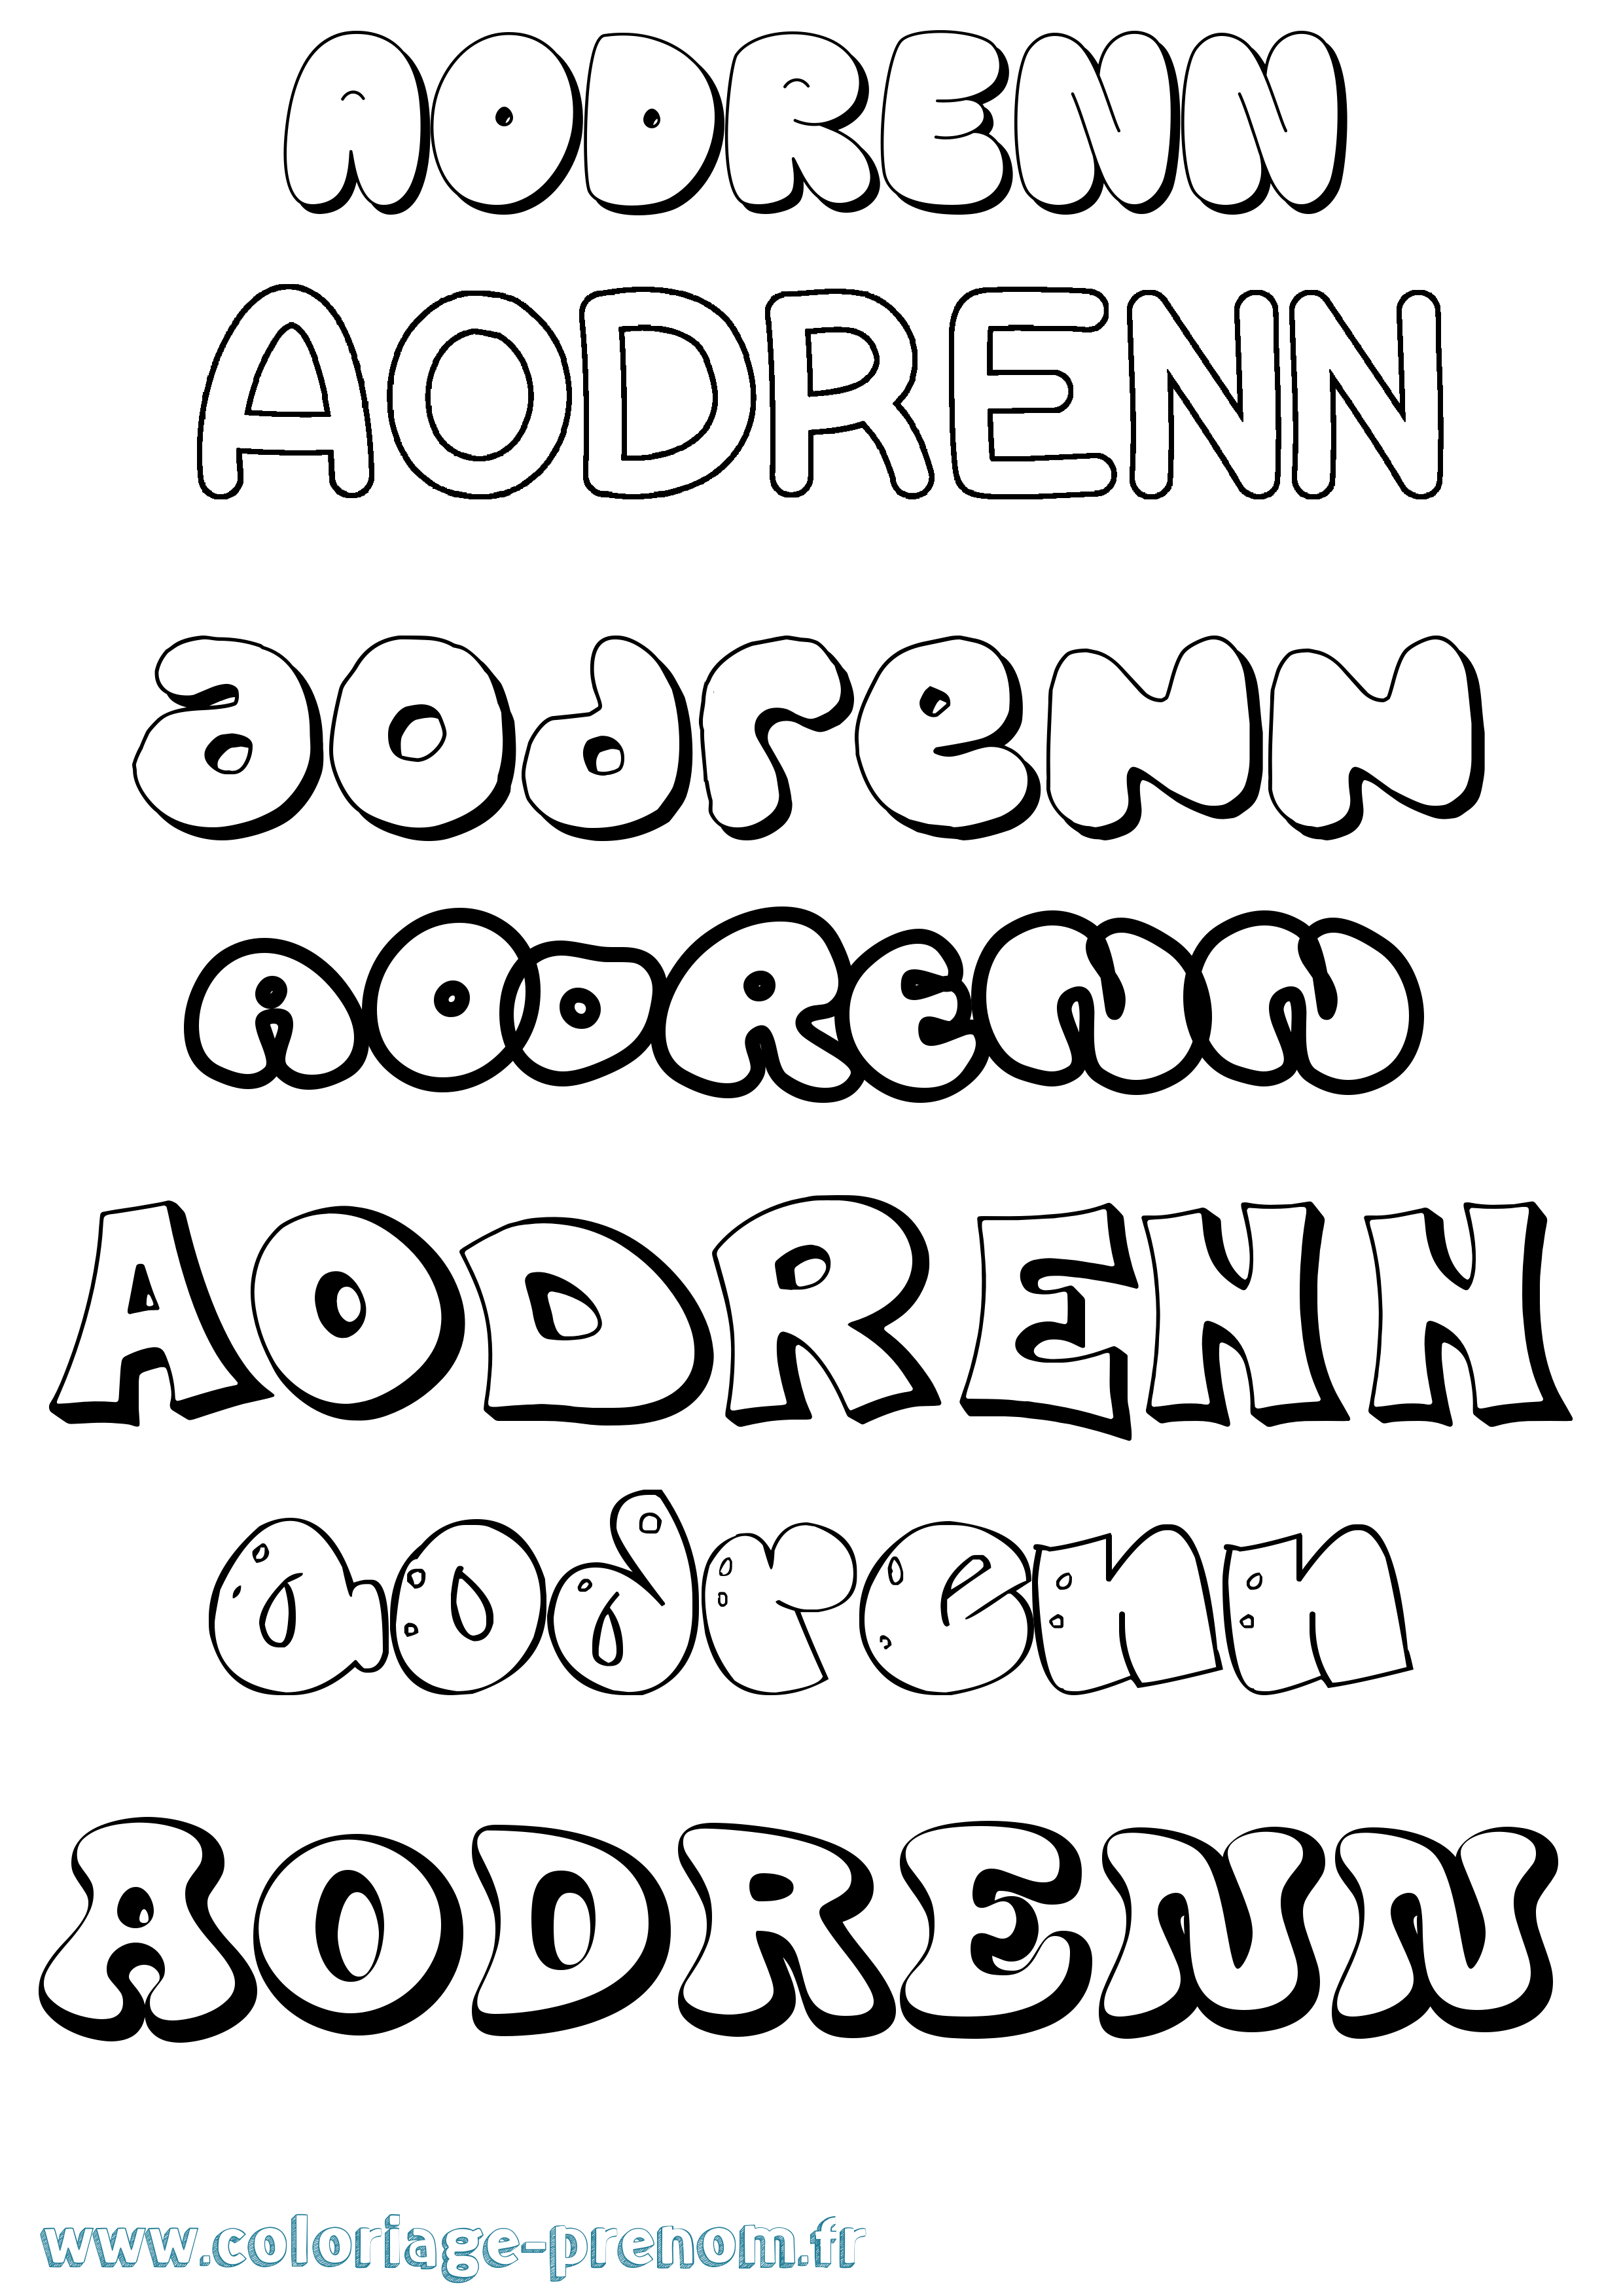 Coloriage prénom Aodrenn Bubble